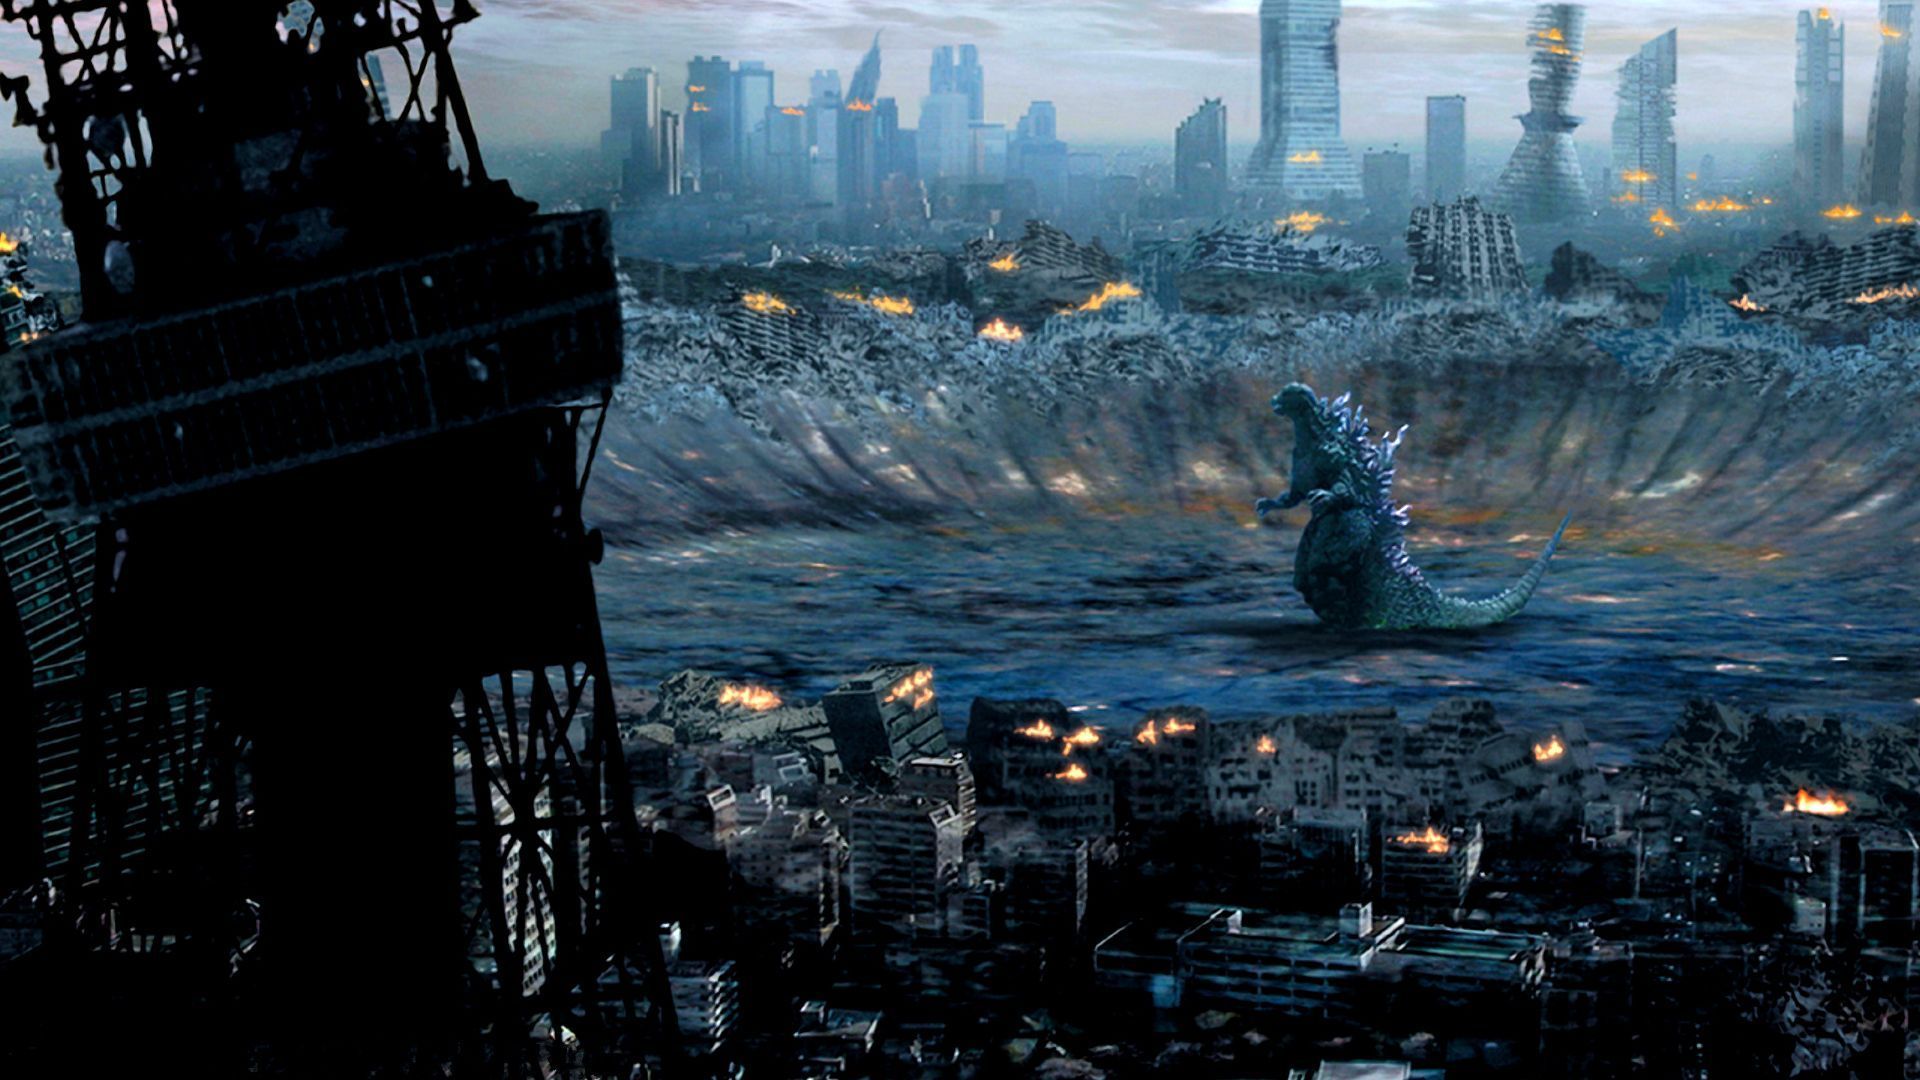 Godzilla (2014) Wallpapers